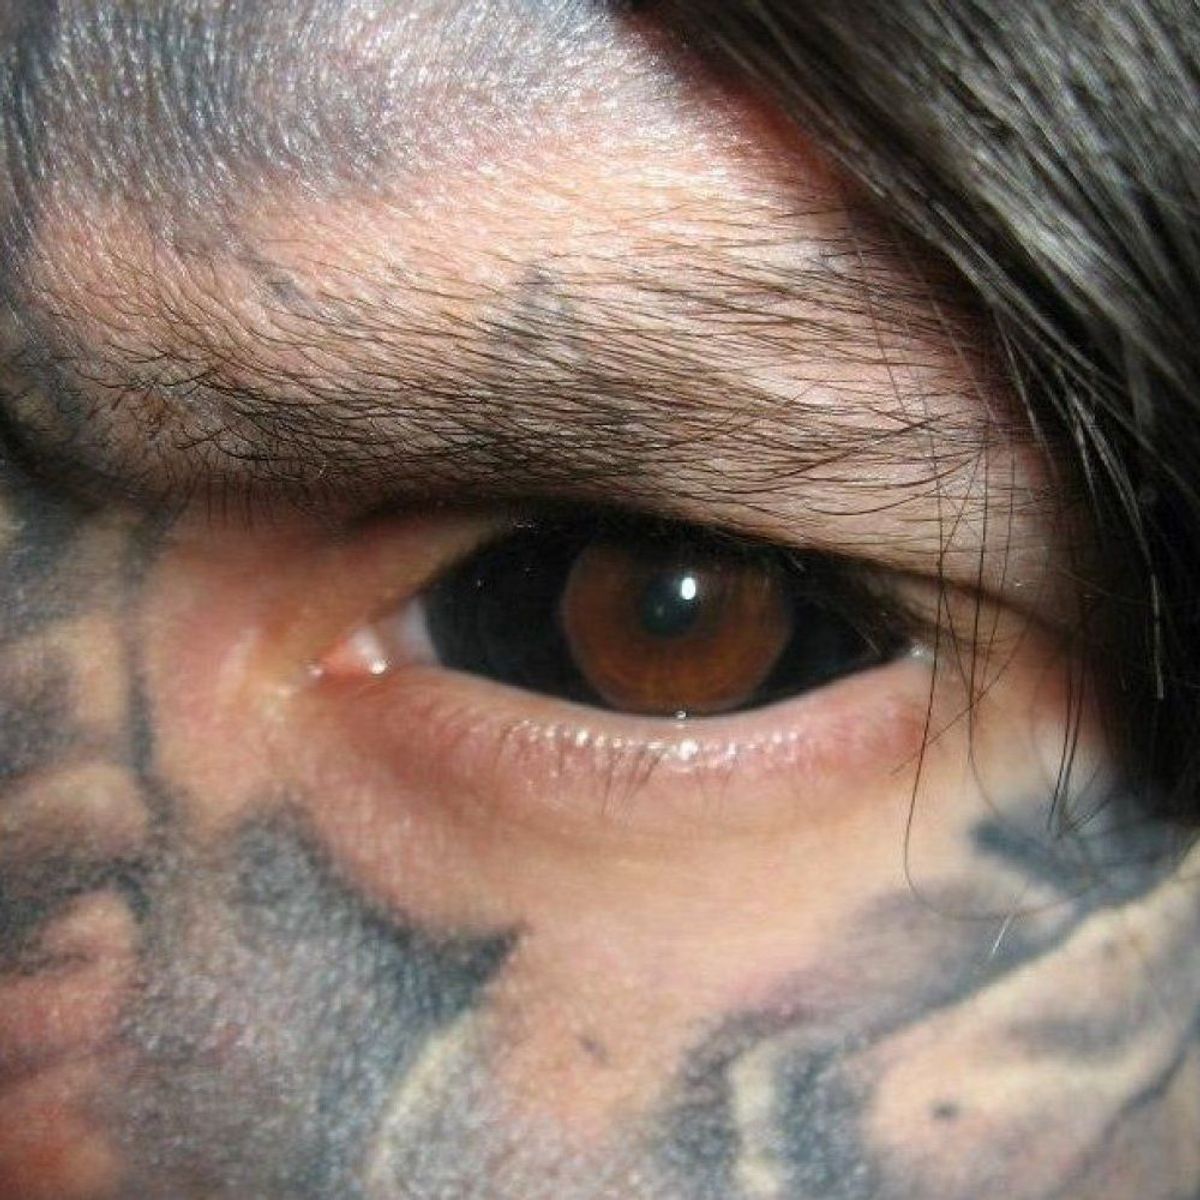 Татуировки на глазах